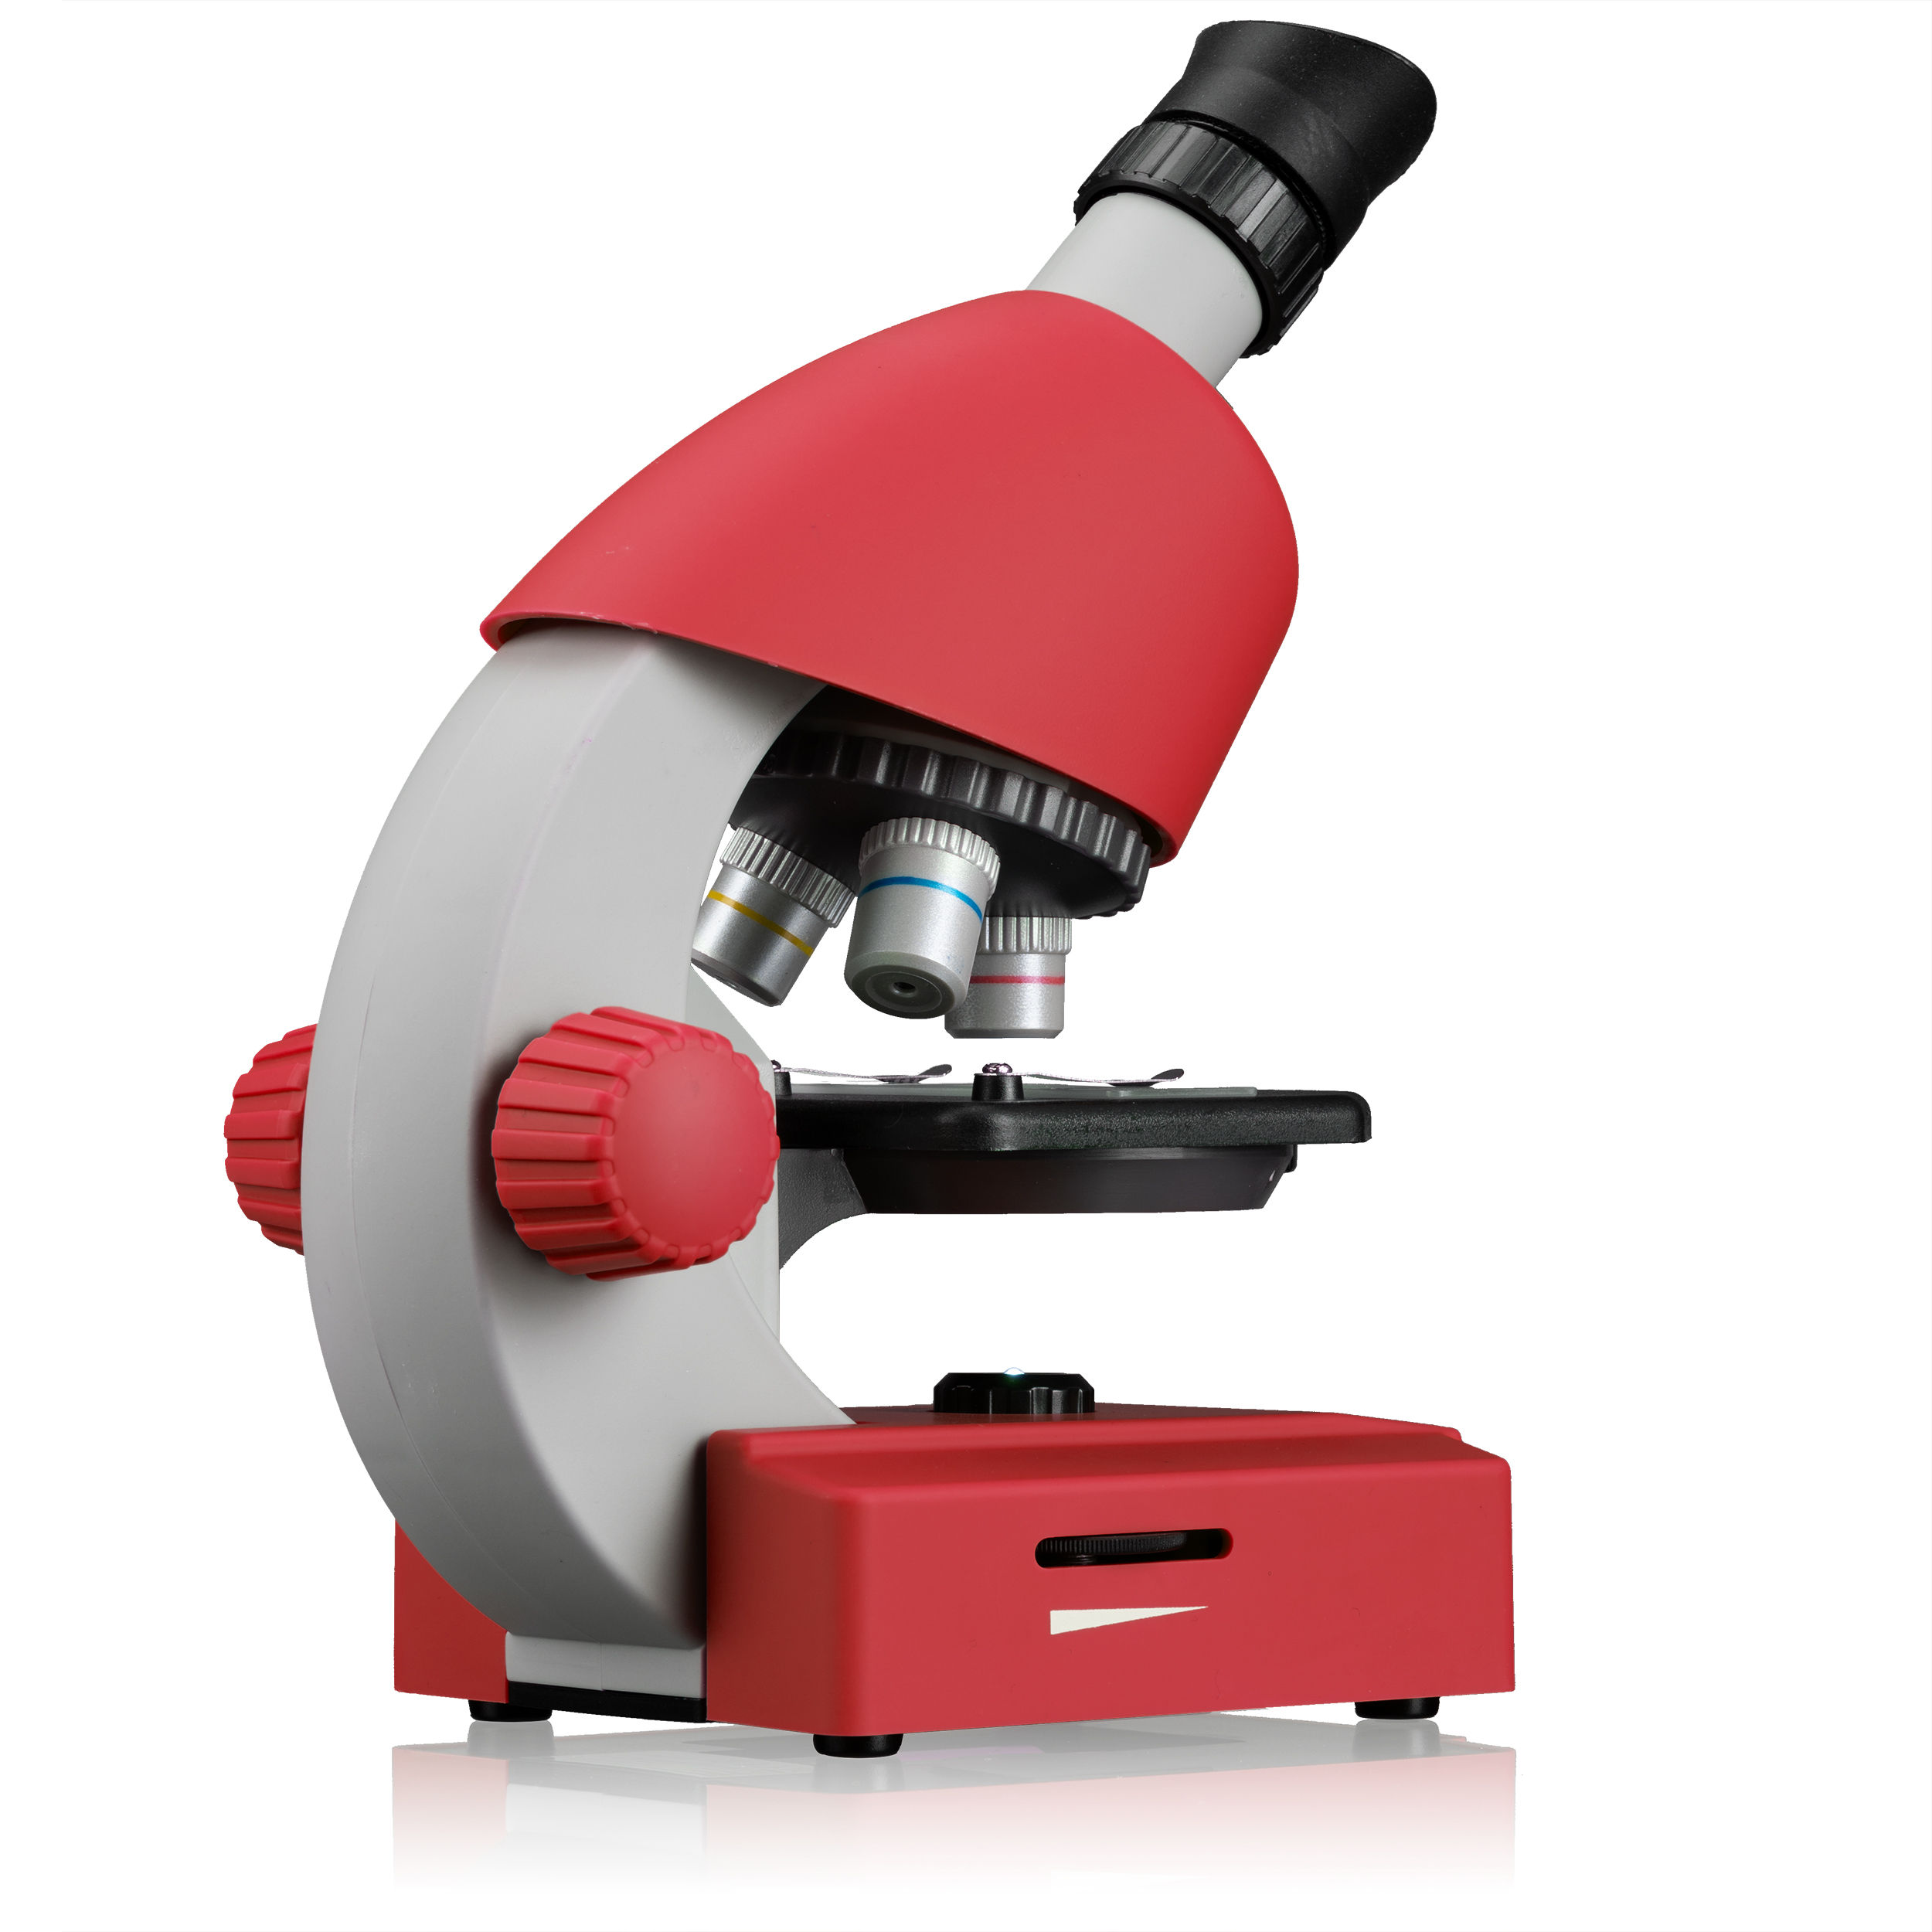 BRESSER JUNIOR Microscopio 40x-640x